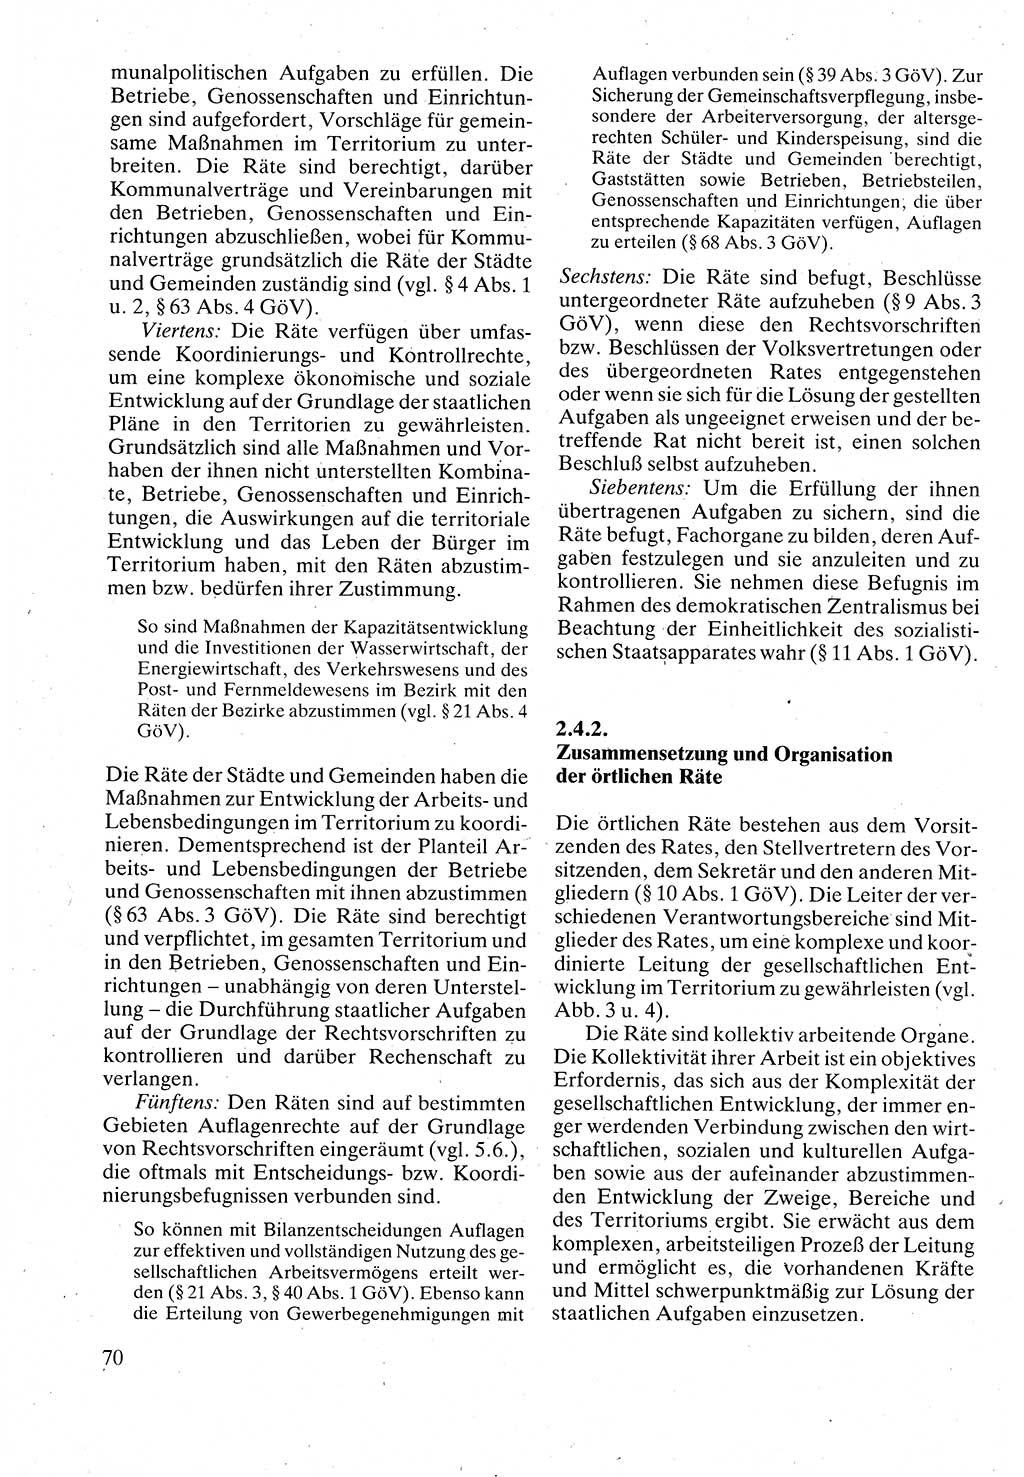 Verwaltungsrecht [Deutsche Demokratische Republik (DDR)], Lehrbuch 1988, Seite 70 (Verw.-R. DDR Lb. 1988, S. 70)